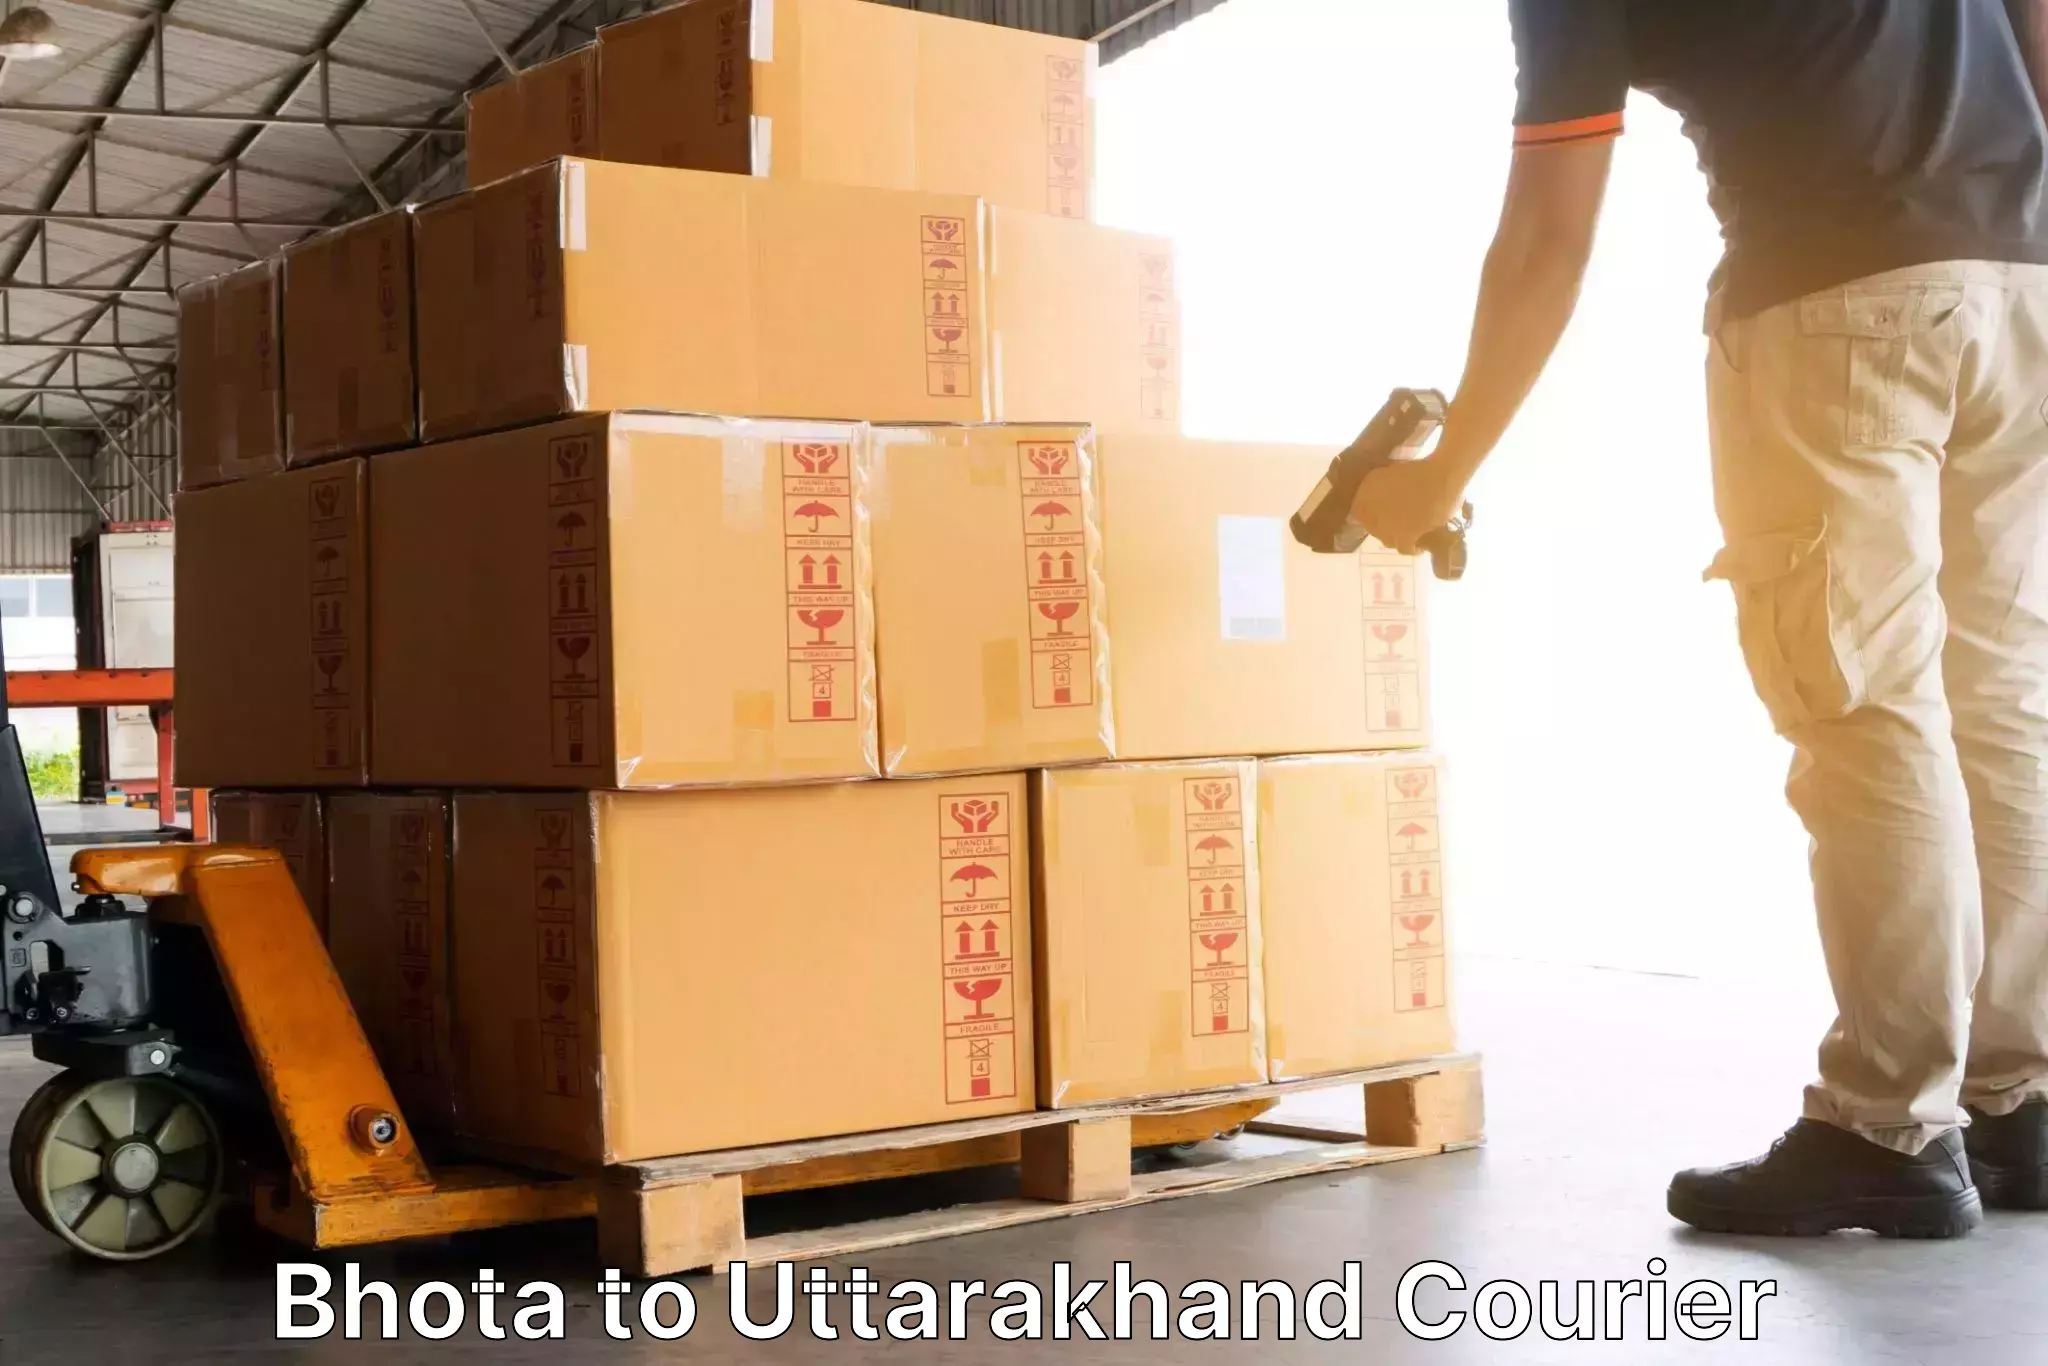 Expedited shipping methods Bhota to Uttarakhand